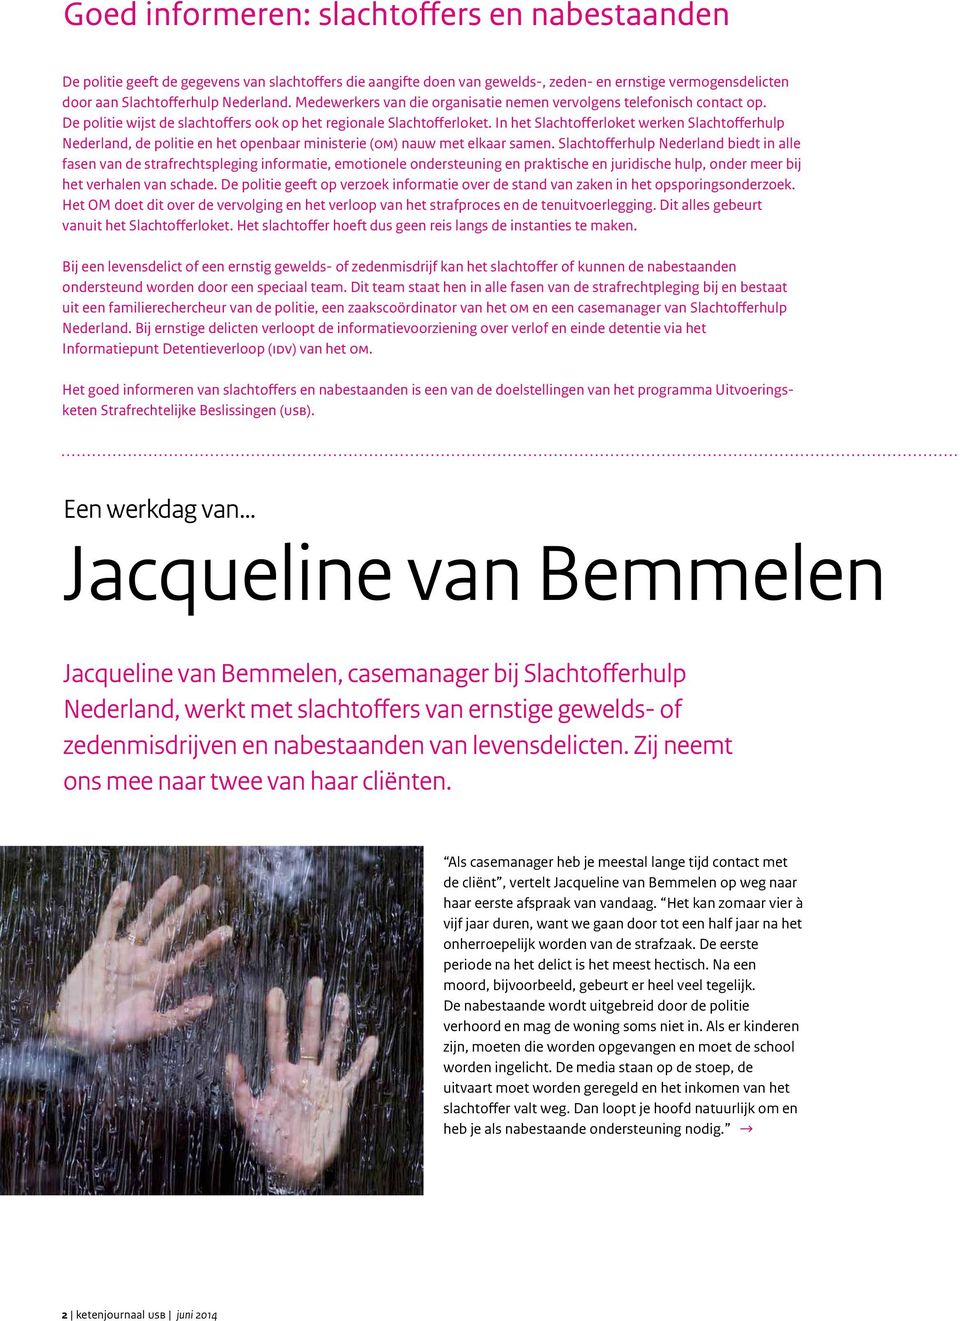 In het Slachtofferloket werken Slachtofferhulp Nederland, de politie en het openbaar ministerie (om) nauw met elkaar samen.